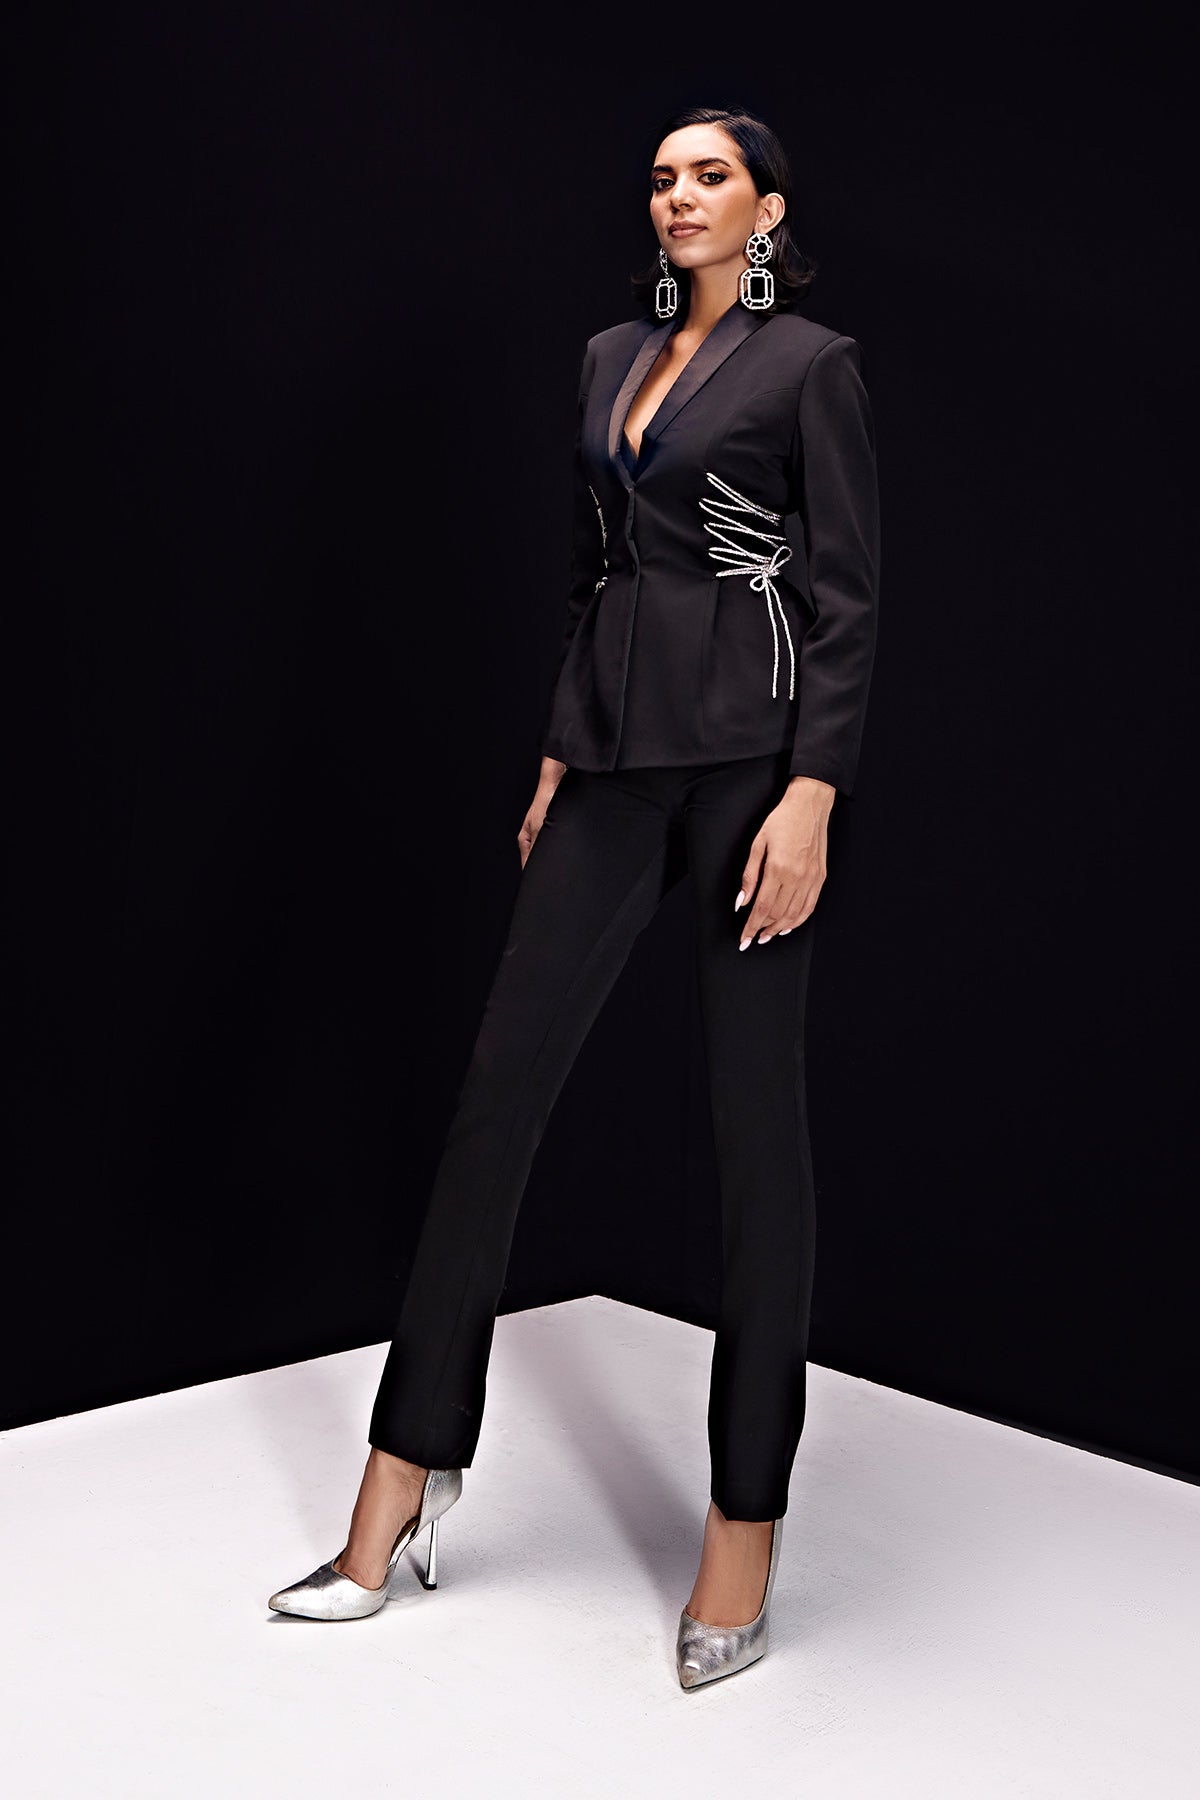 Statement Black Crystal-Lace Blazer Suit